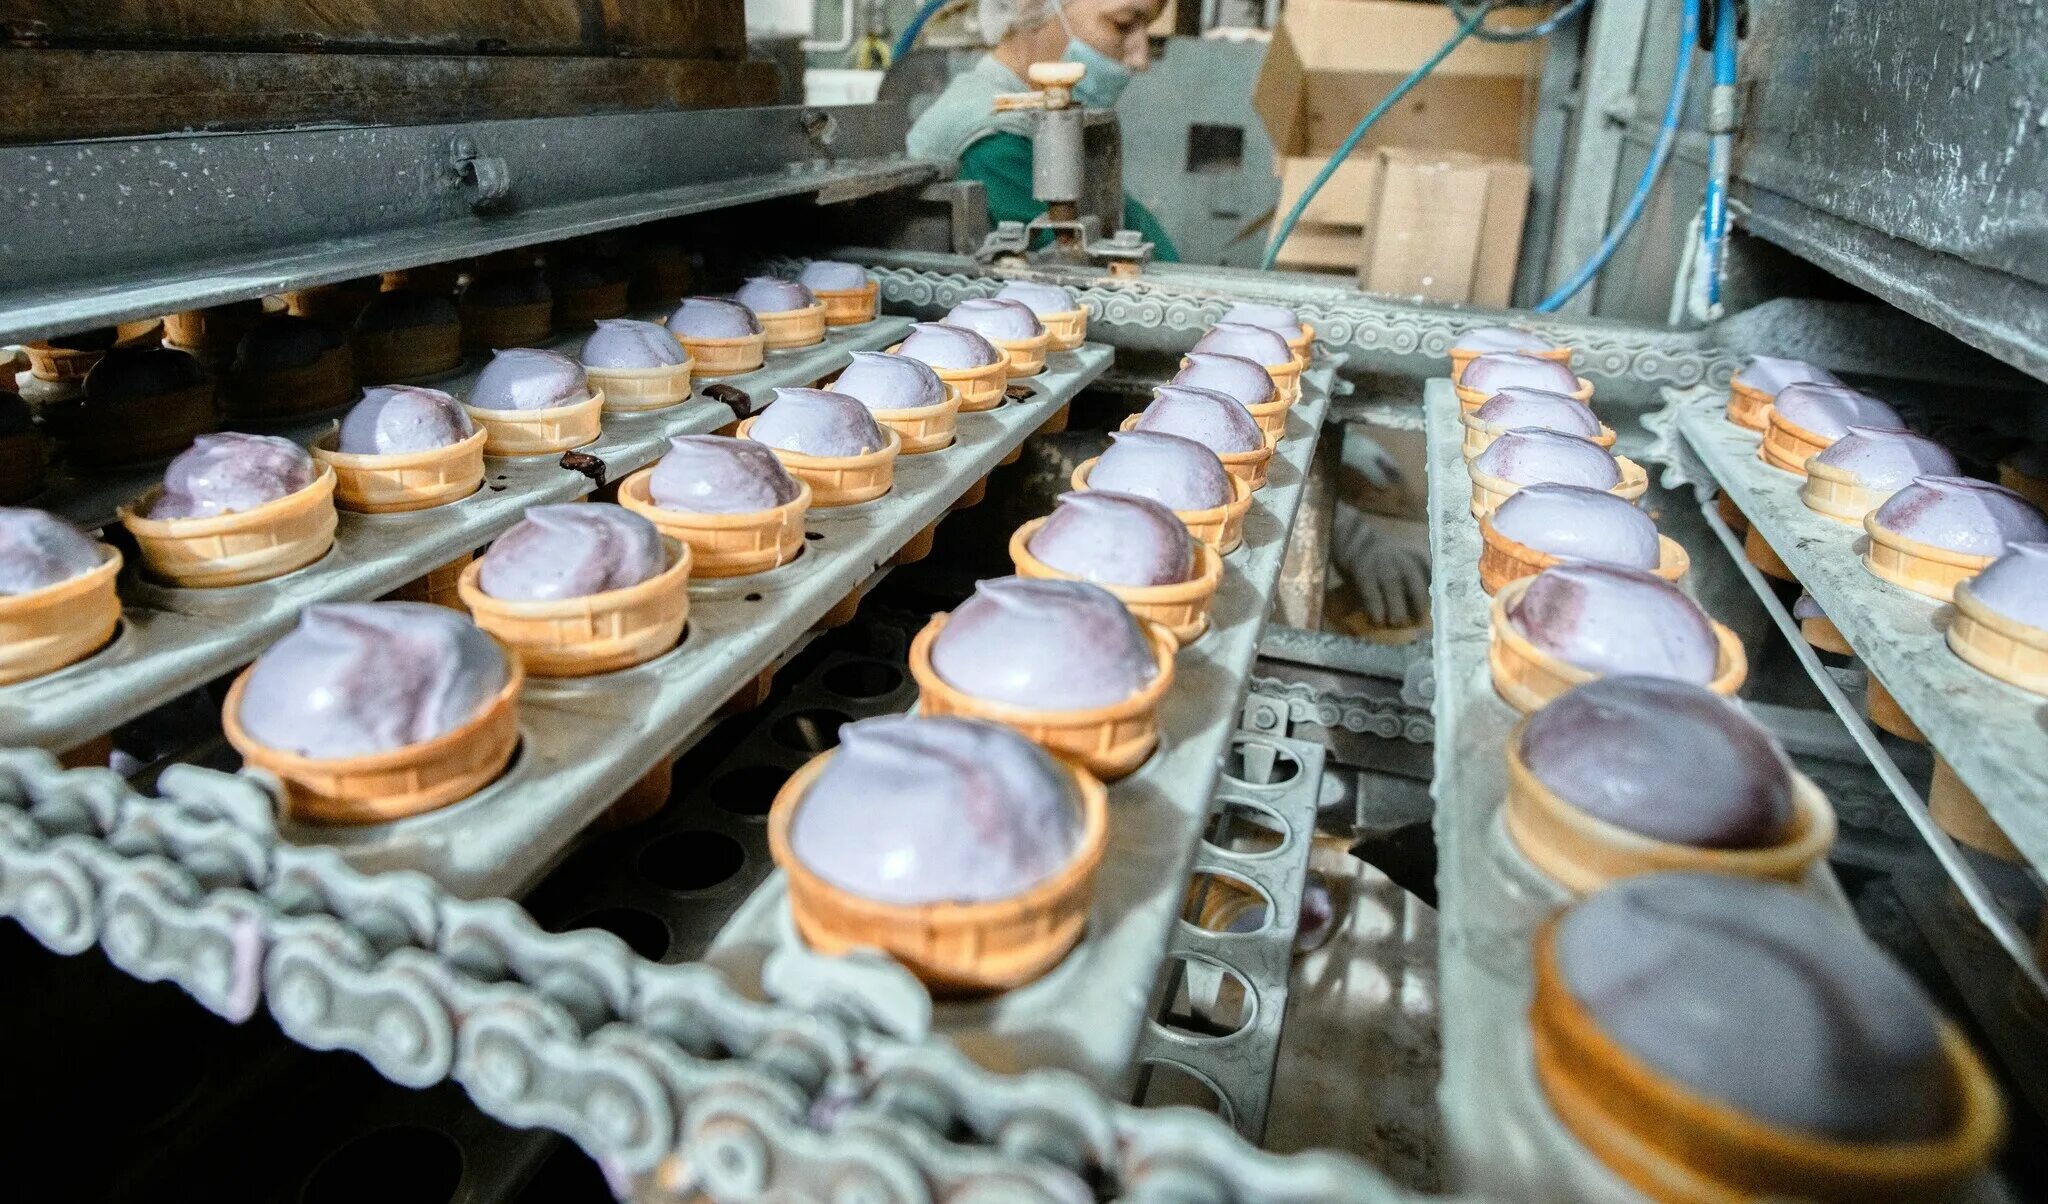 Жуковская фабрика мороженого. Как делают мороженое на фабрике. Карельский стандарт мороженое. Завод выпускающий крышки москвичка.